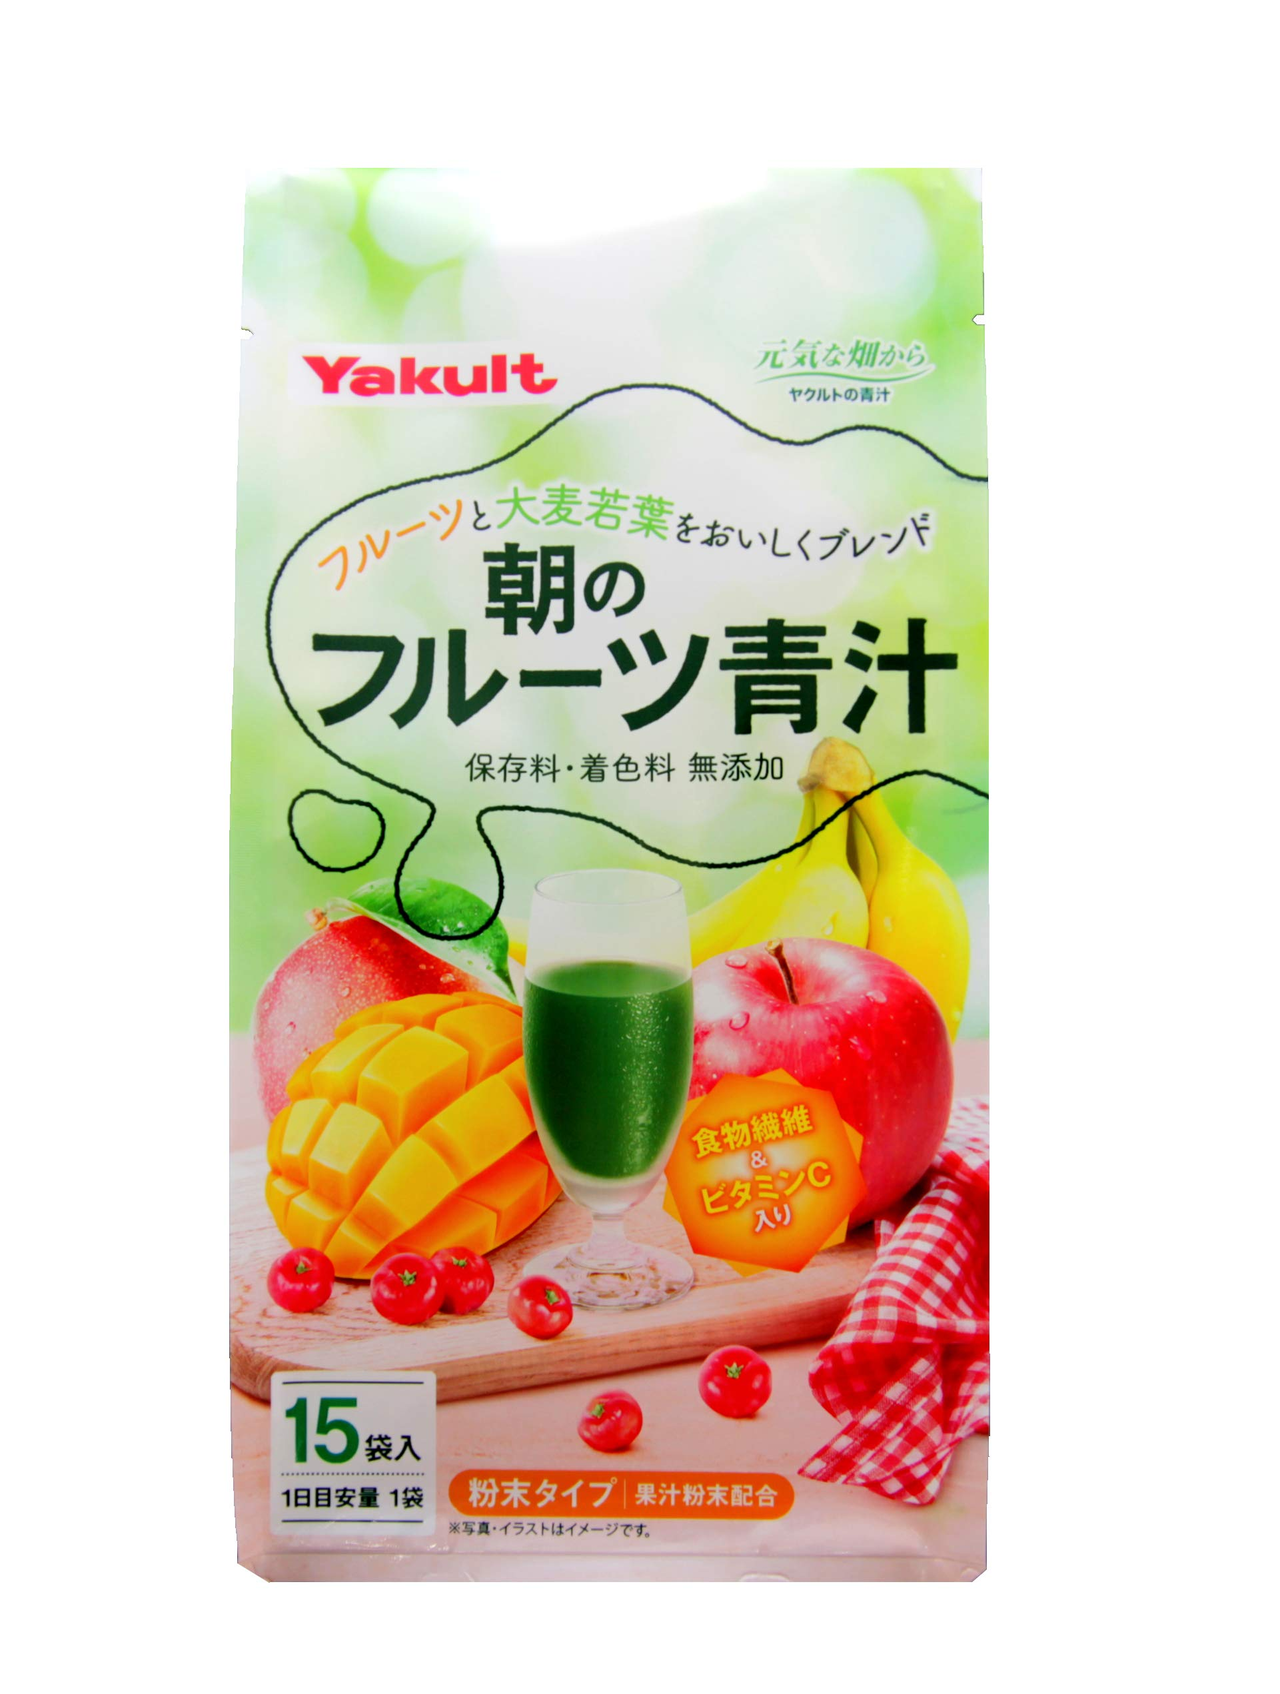 【日亚自营】Yakult养乐多水果口味青汁大麦若叶 7gx15袋